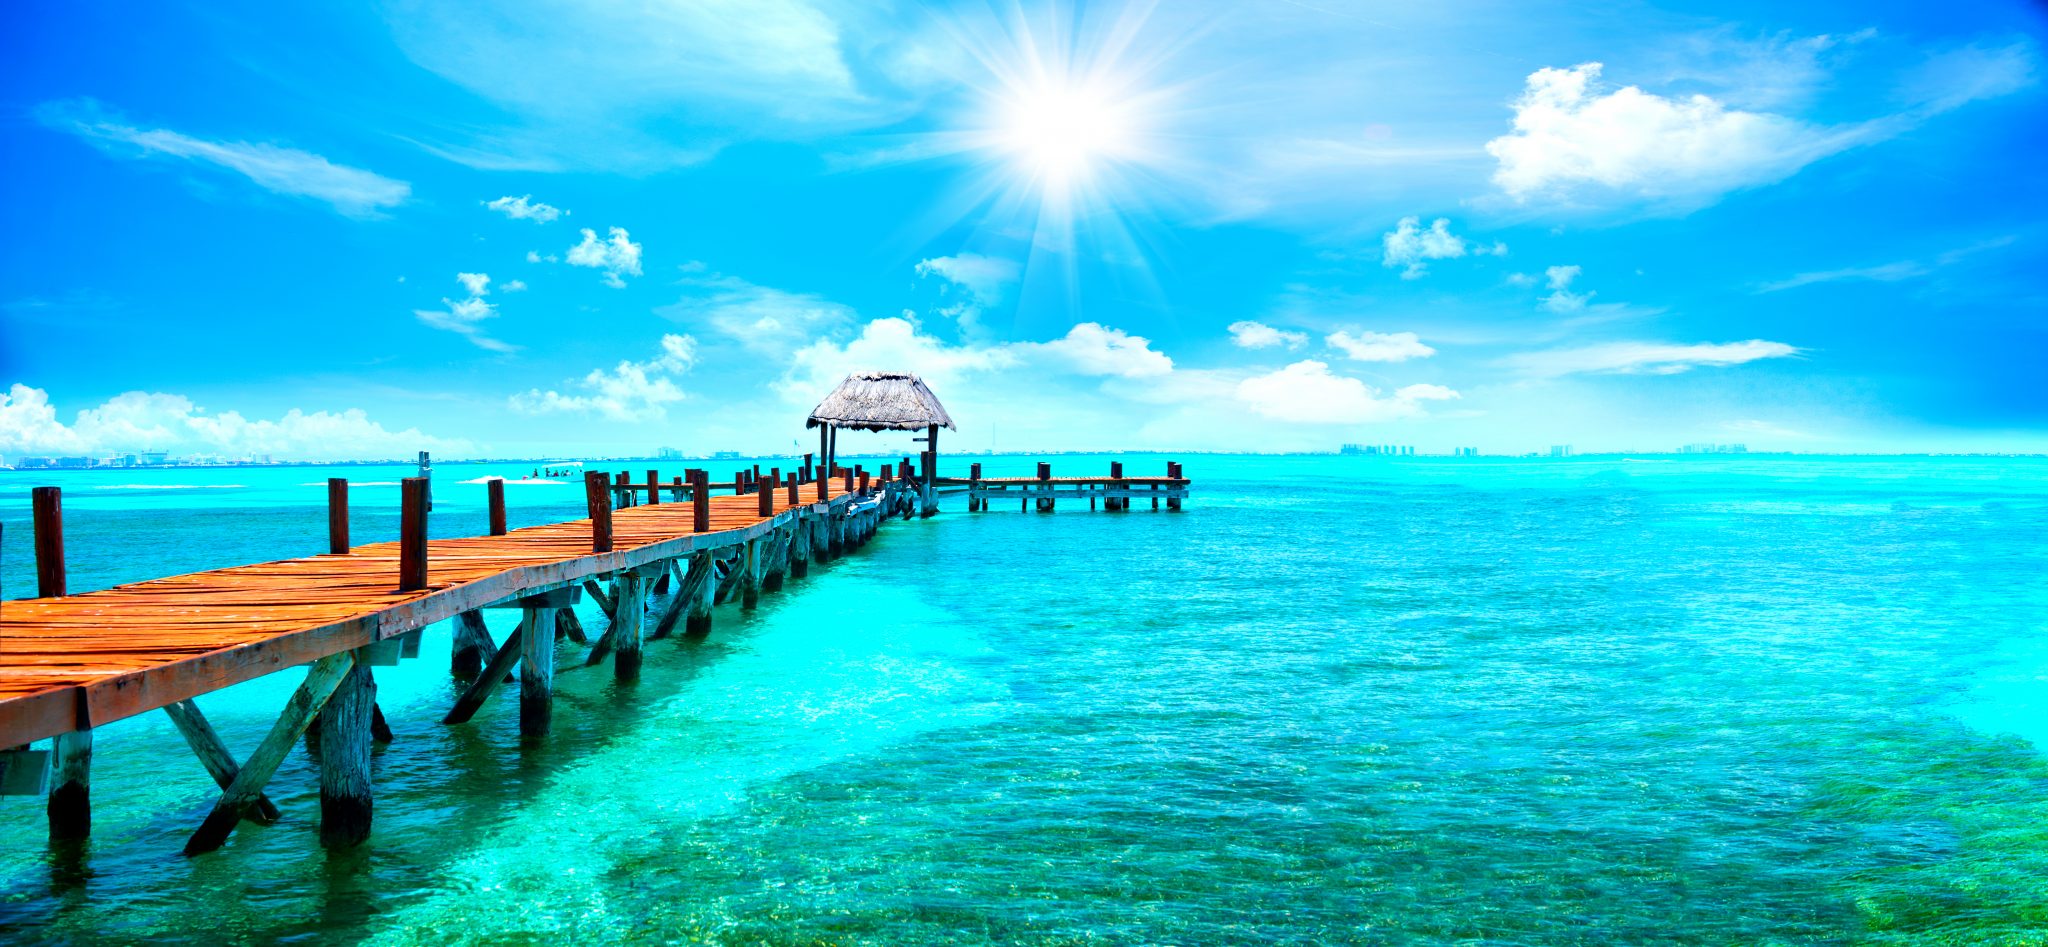 Pesquisando onde se hospedar no México? Então saiba que Riviera Cancún é, sem dúvida alguma, um dos destinos preferidos de quem visita o país l Crédito: Shutterstock